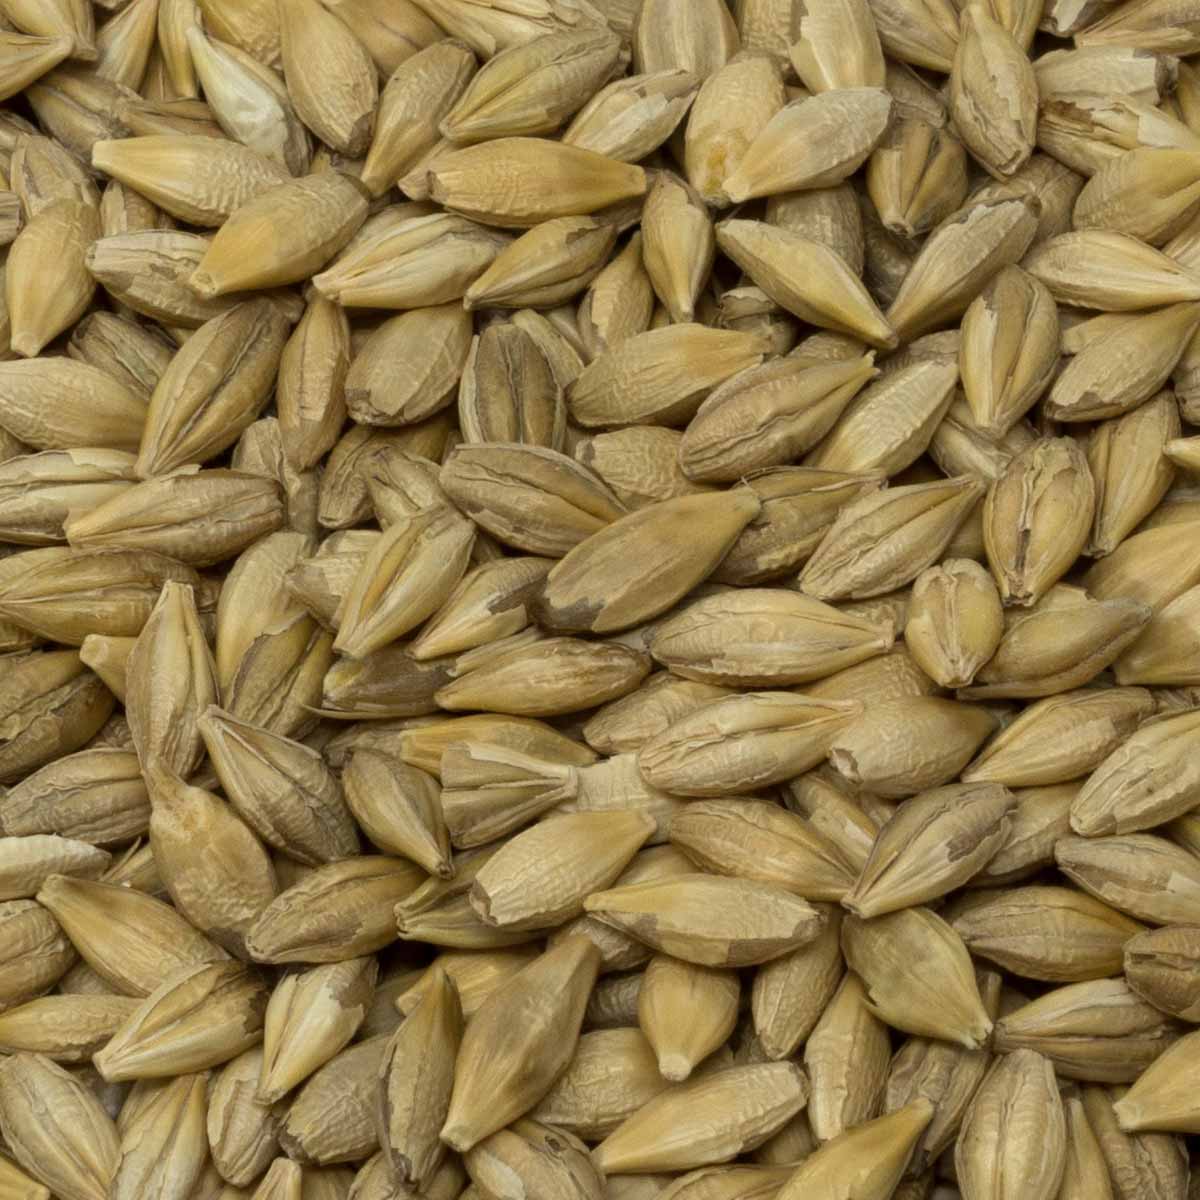 Leimüller Organic Barley Premium 25 kg